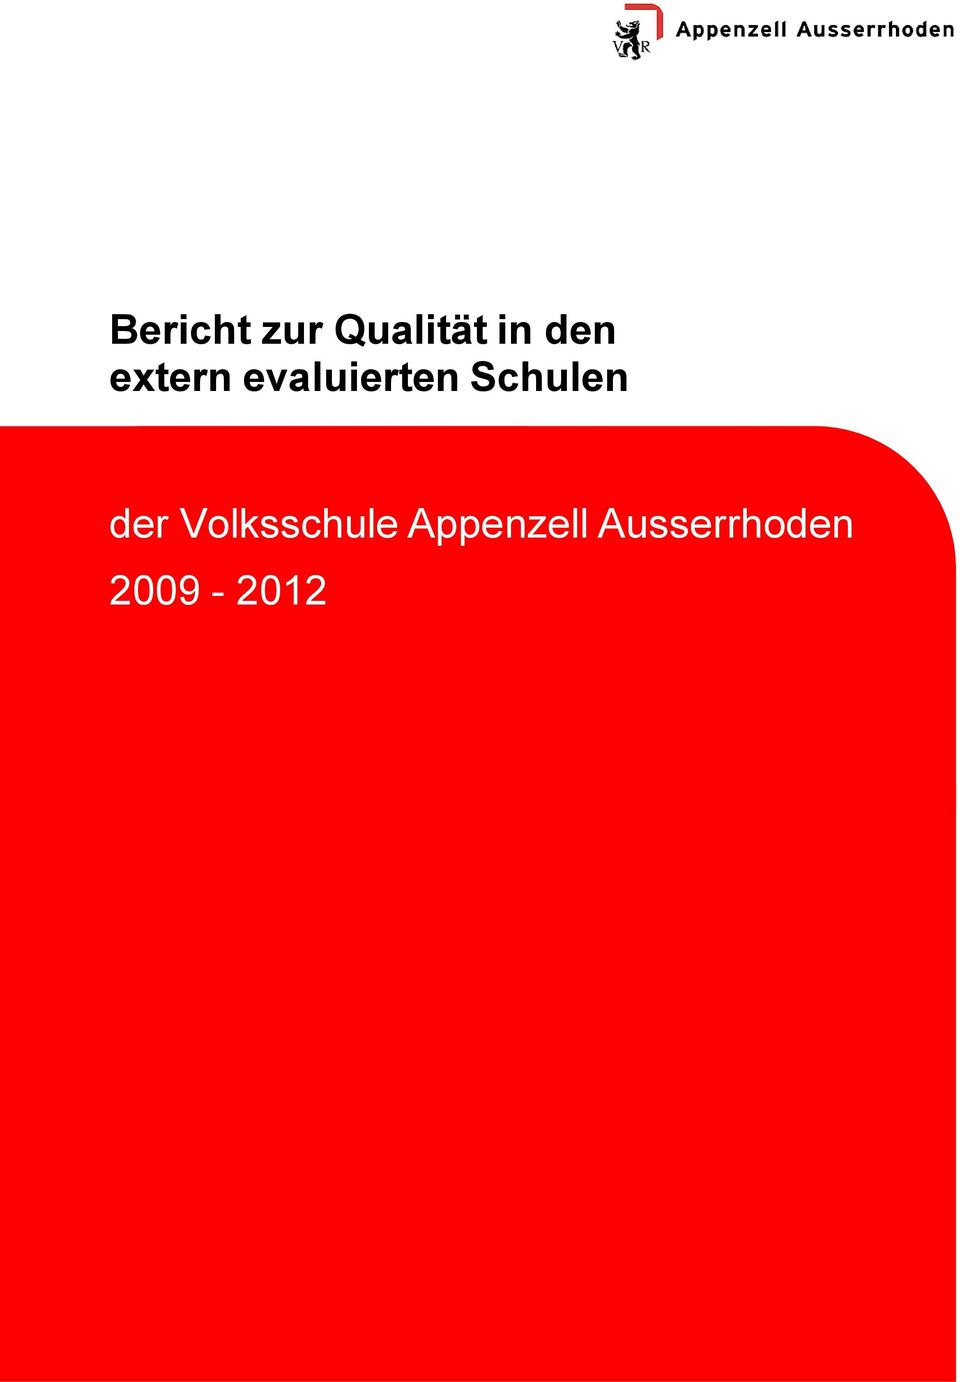 Appenzell Ausserrhoden 2009-2012 Bericht